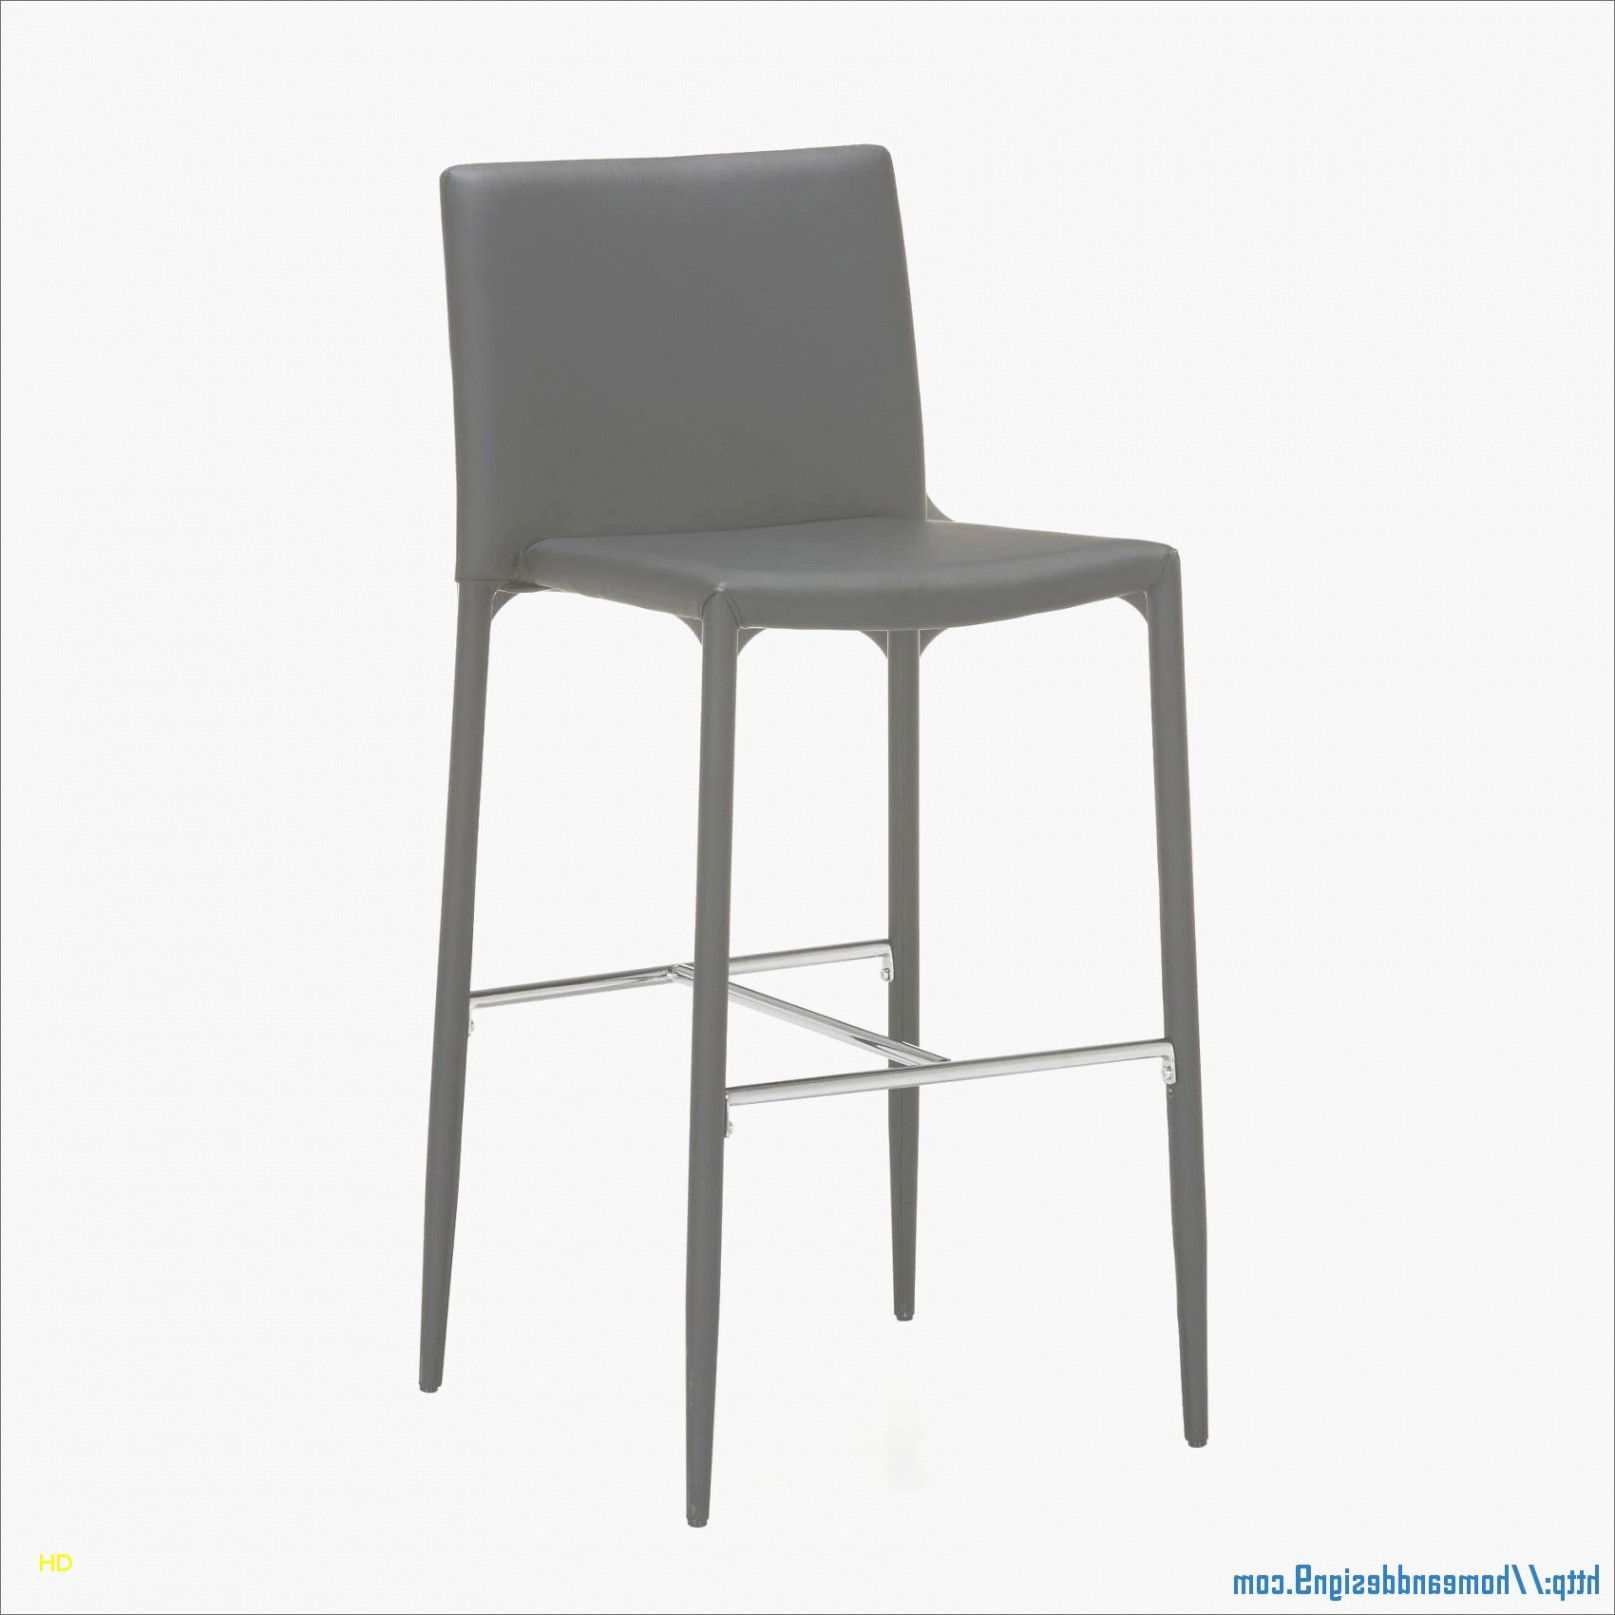 tabouret de cuisine imposant chaise haute metal nouveau chaises hautes de bar cuisine bar de tabouret de cuisine